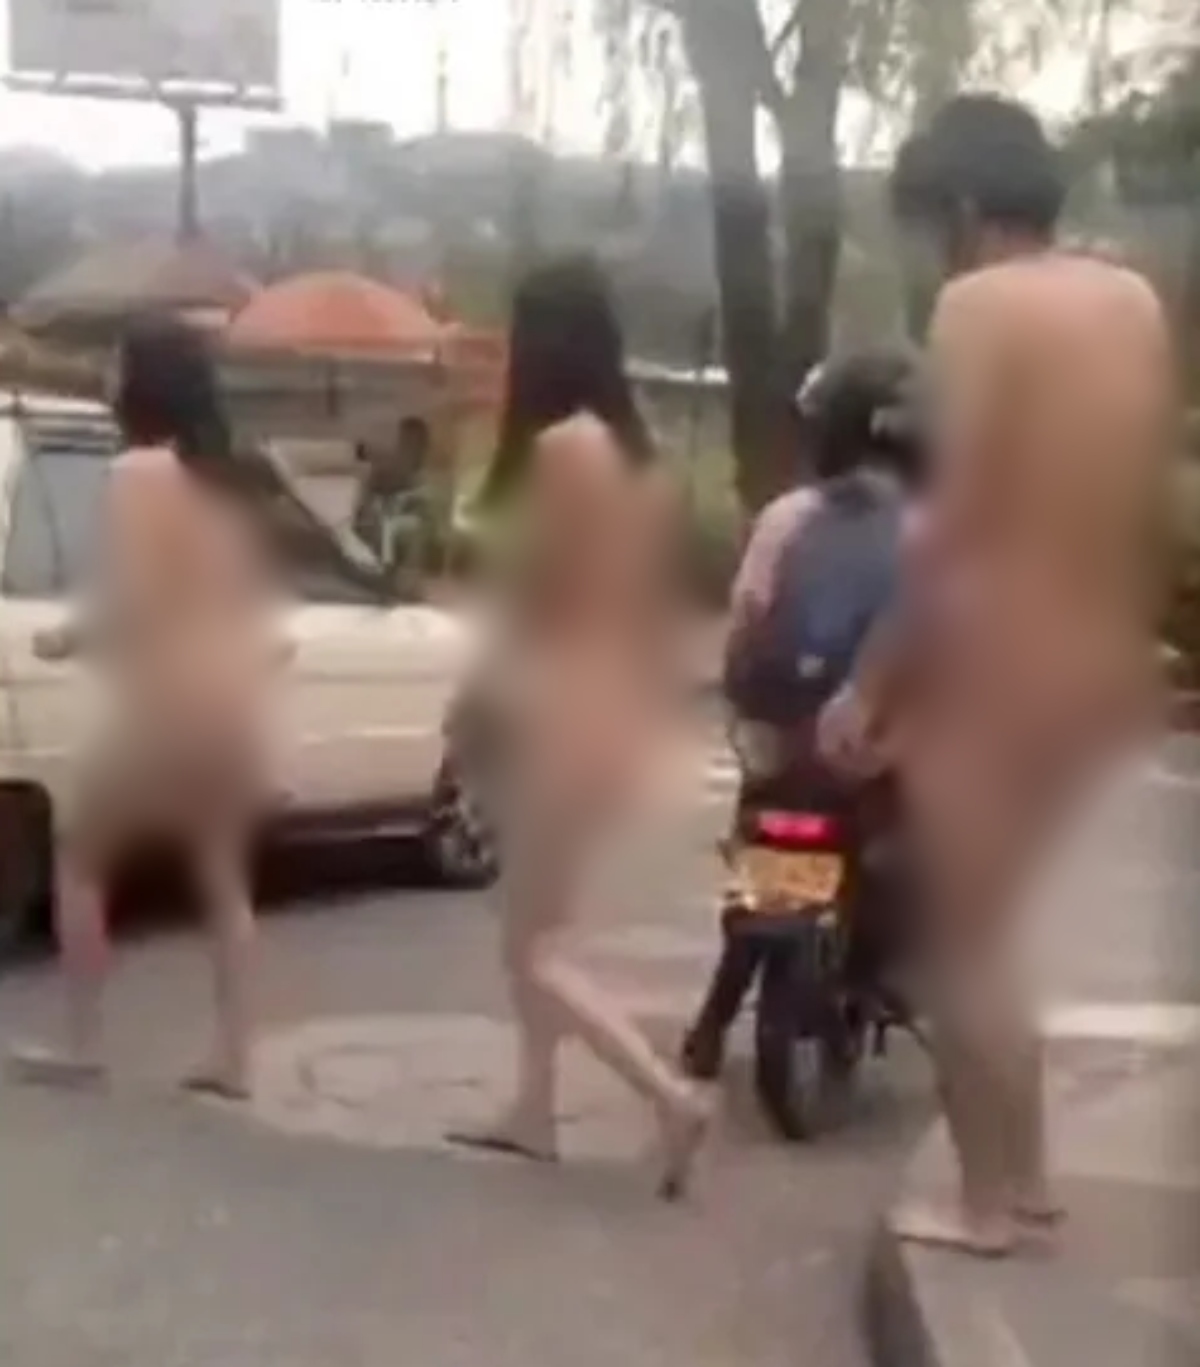  Um grupo de turistas formado por duas mulheres e um homem foram flagrados andando sem roupa na cidade de Caldas, na Colômbia, depois de tomarem uma bebida misteriosa 